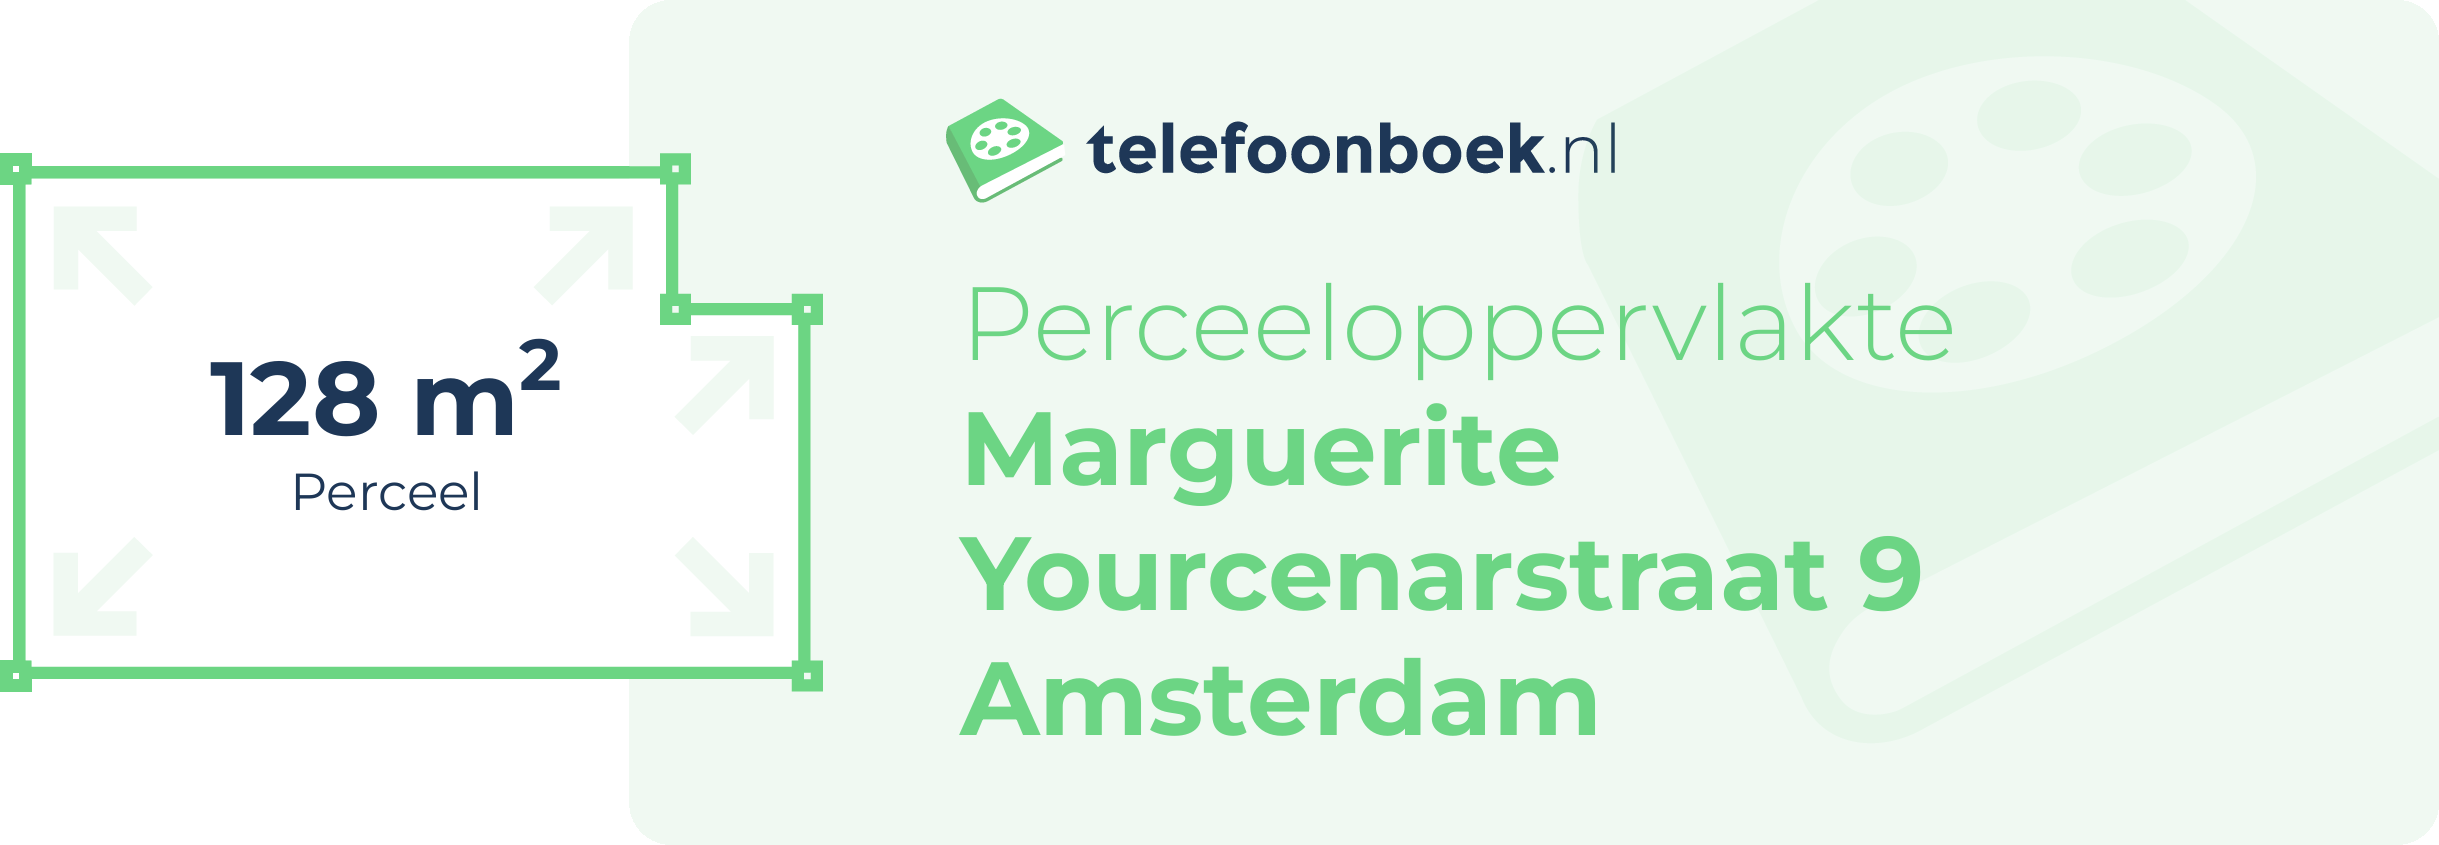 Perceeloppervlakte Marguerite Yourcenarstraat 9 Amsterdam